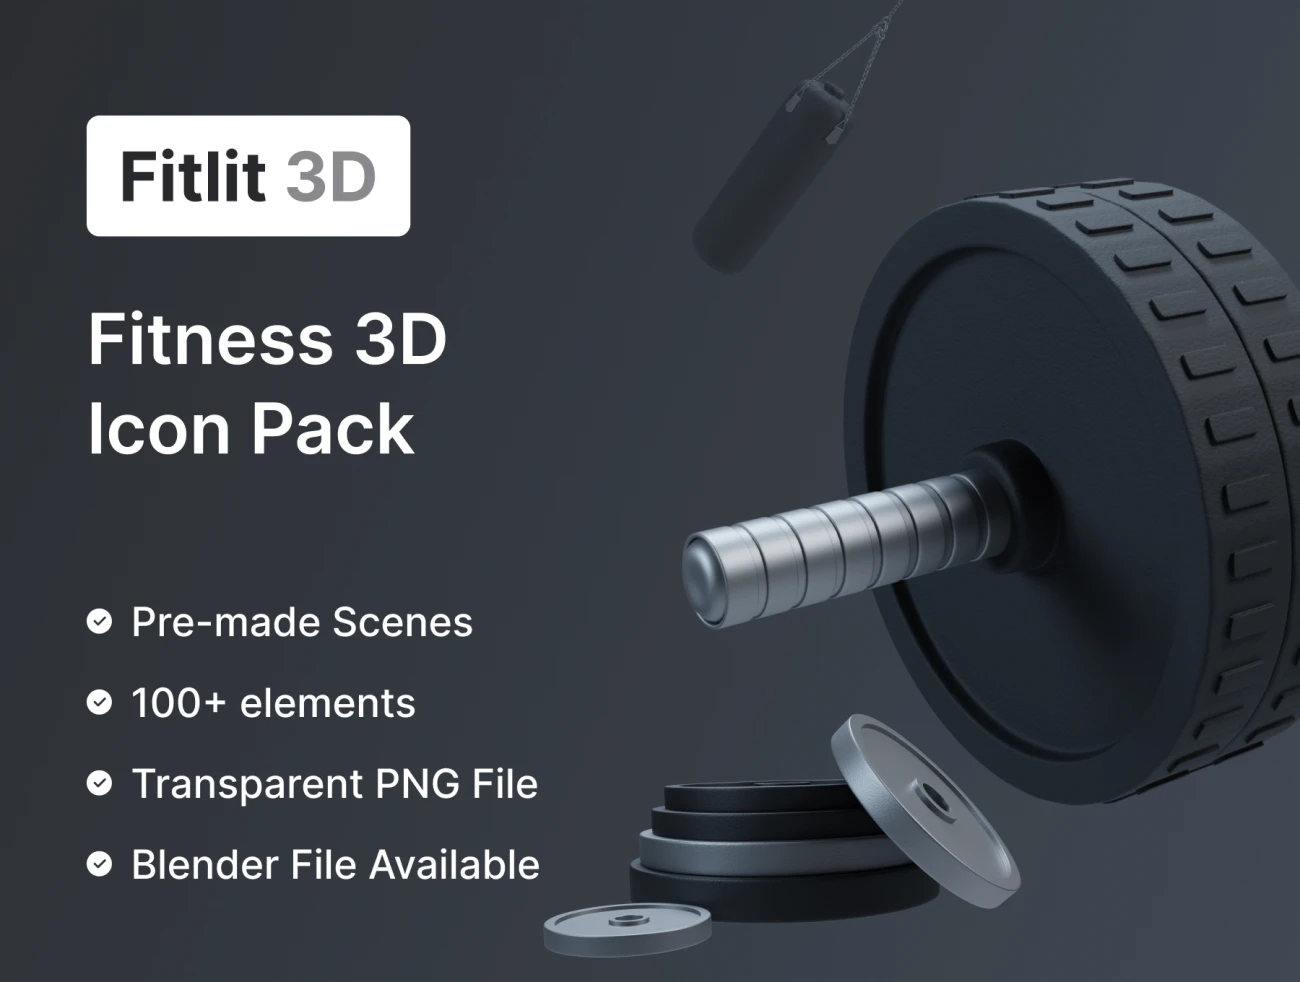 100个深色炫酷健身3D模型素材包 Fitlit 3D Fitness 3D Models .blender .figma插图1